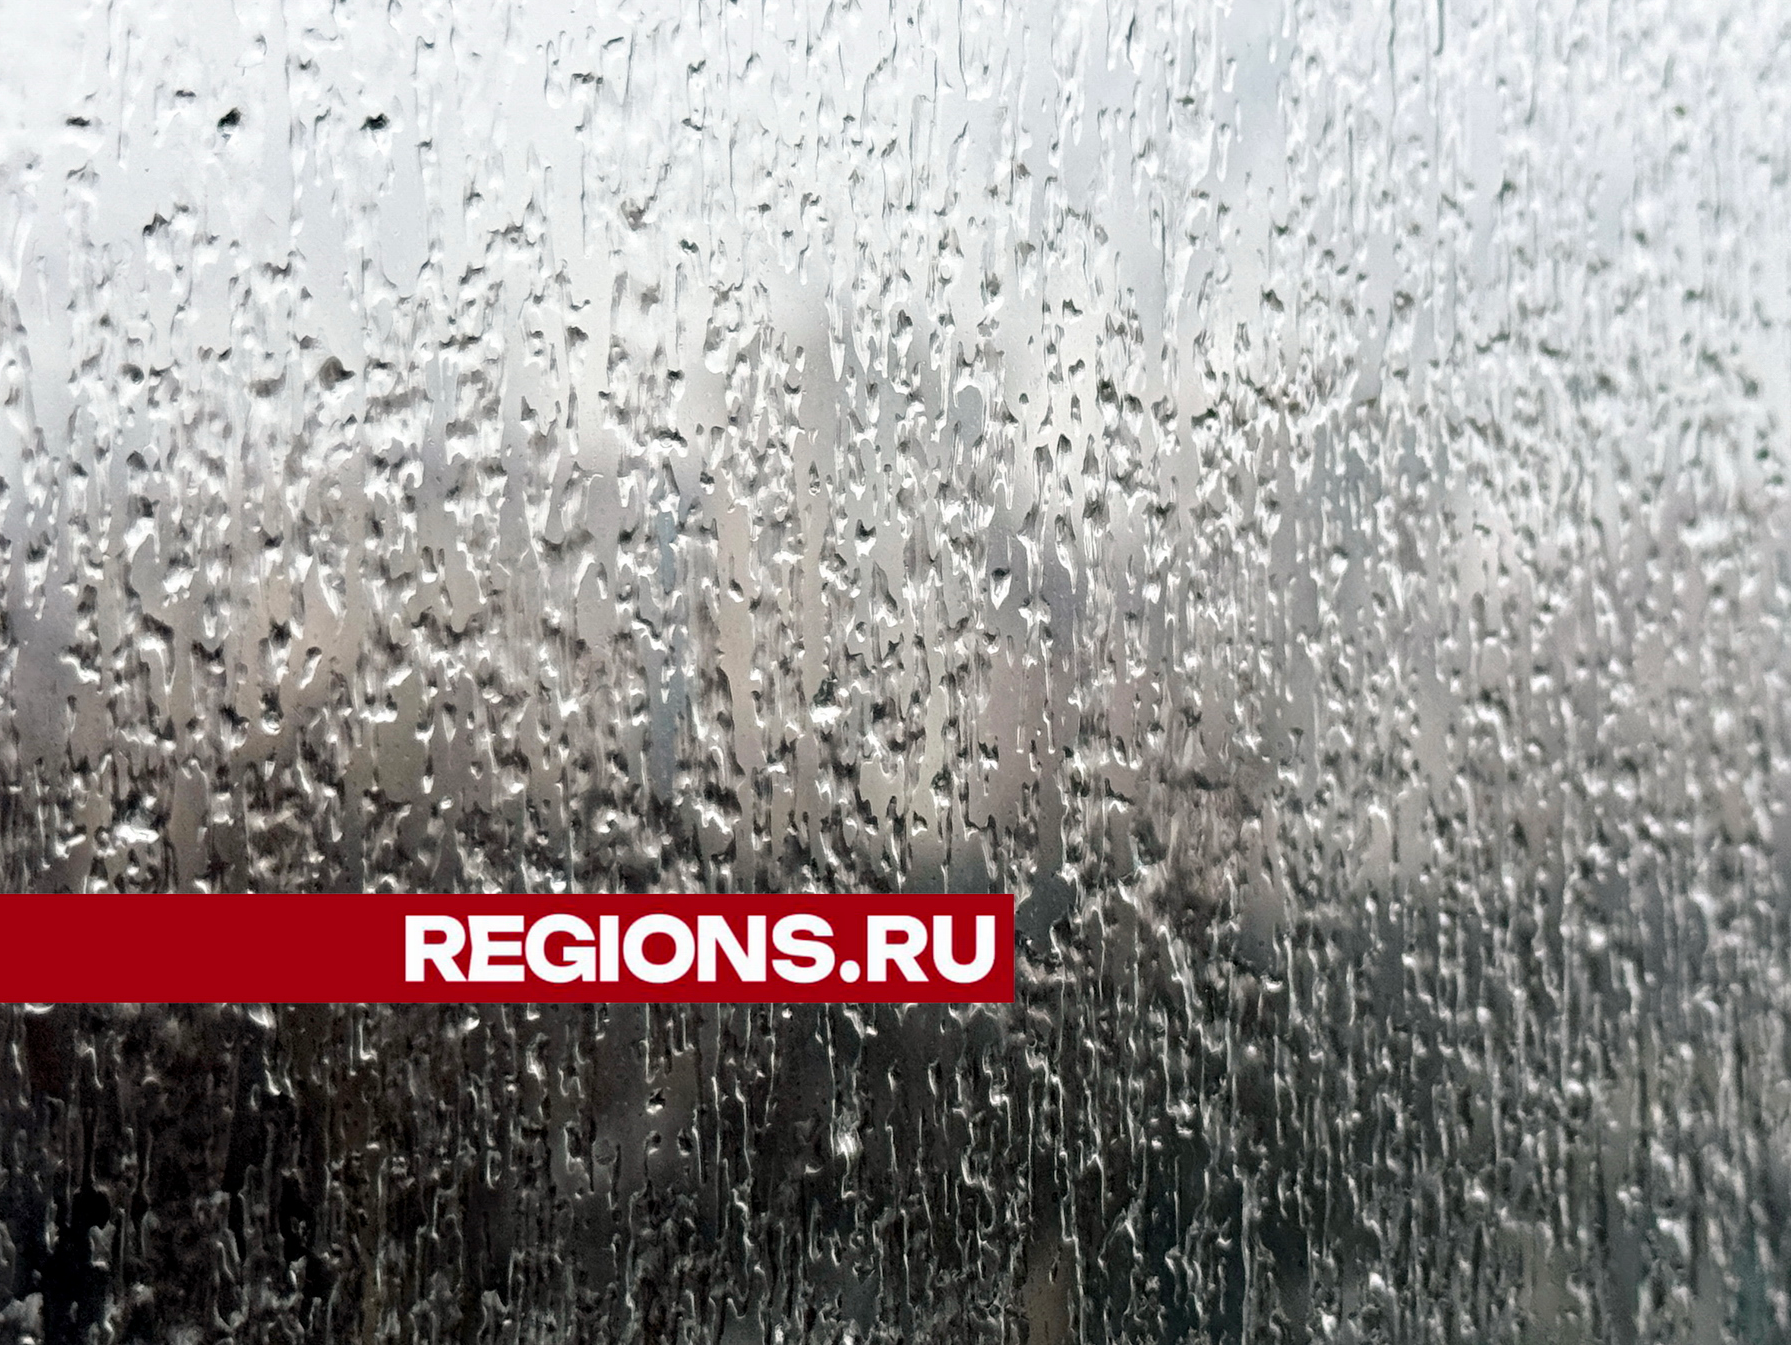 Непогода надвигается: в Москве и Подмосковье объявлено штормовое предупреждение